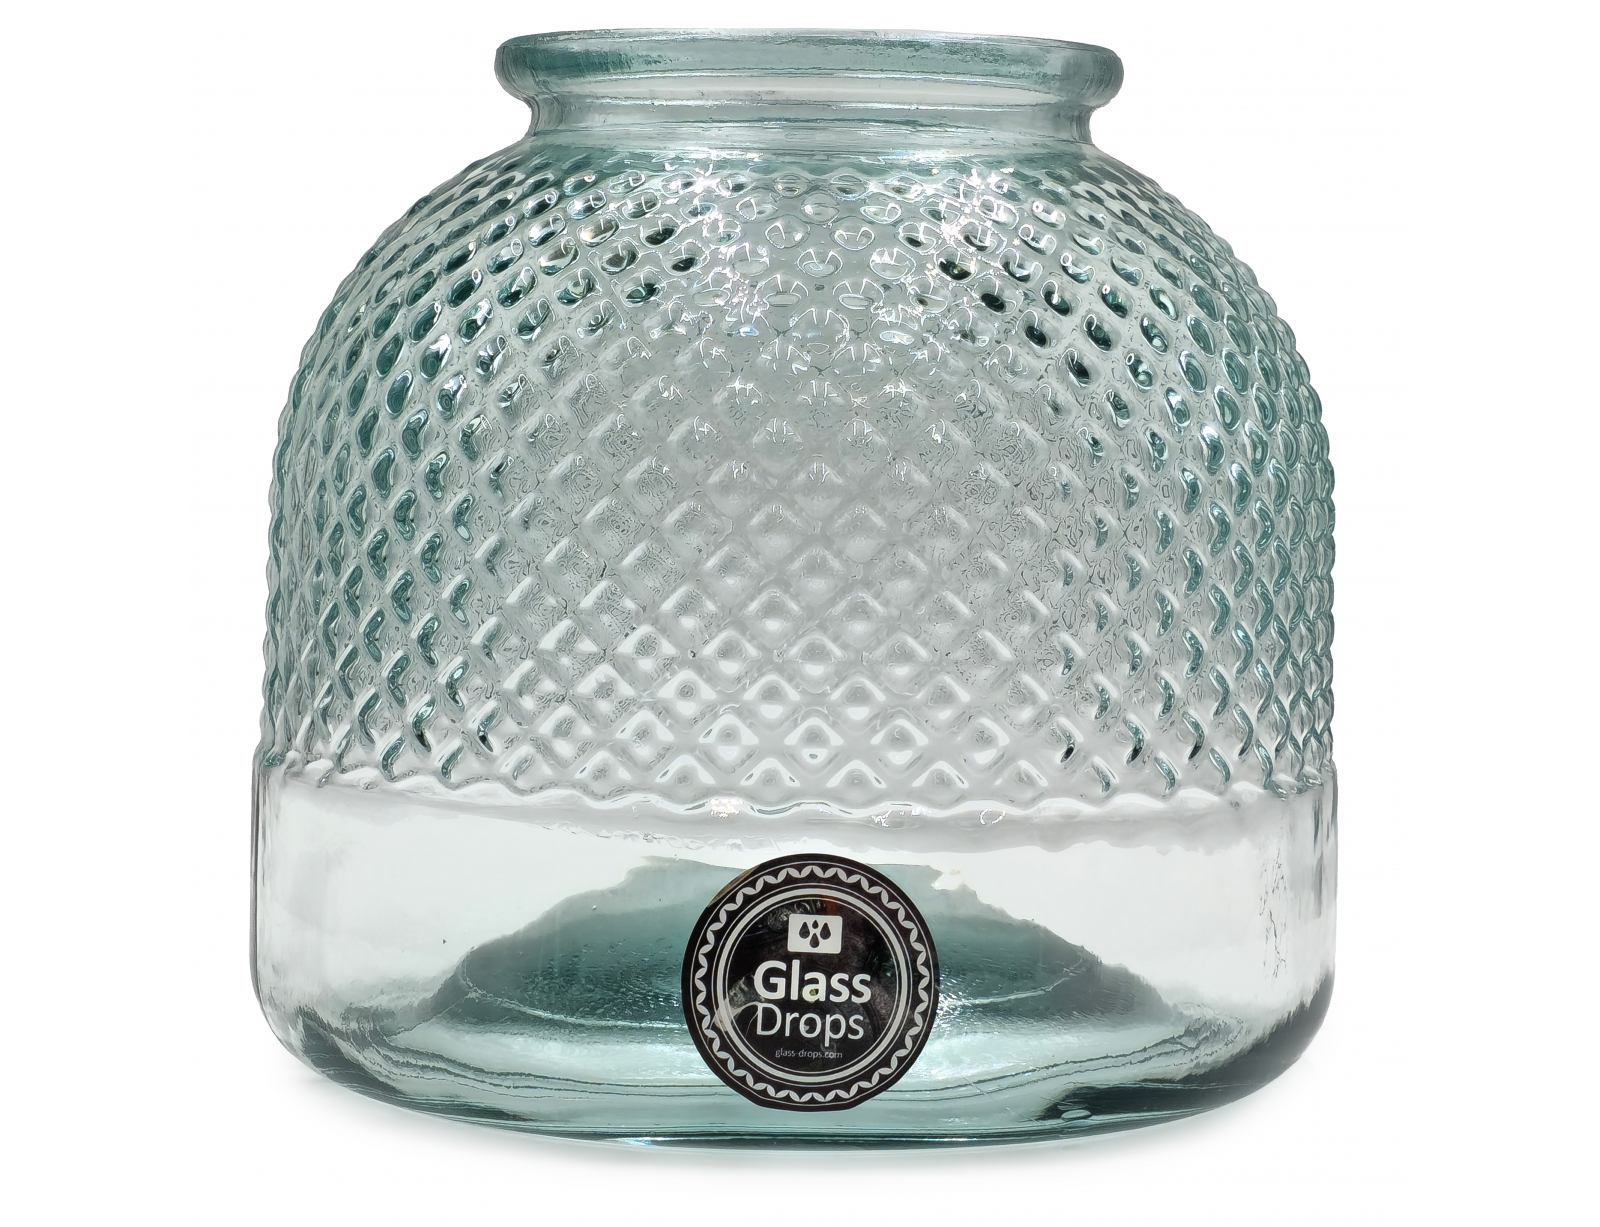 Εικόνα Διακοσμητικό Βάζο - Κηροπήγιο Glass Drops Diamante (5948)  Aπό 100% ανακυκλωμένο γυαλί, Xωρητικότητας 6.8L, Διαστάσεων Ø 24 x Υ 24 cm